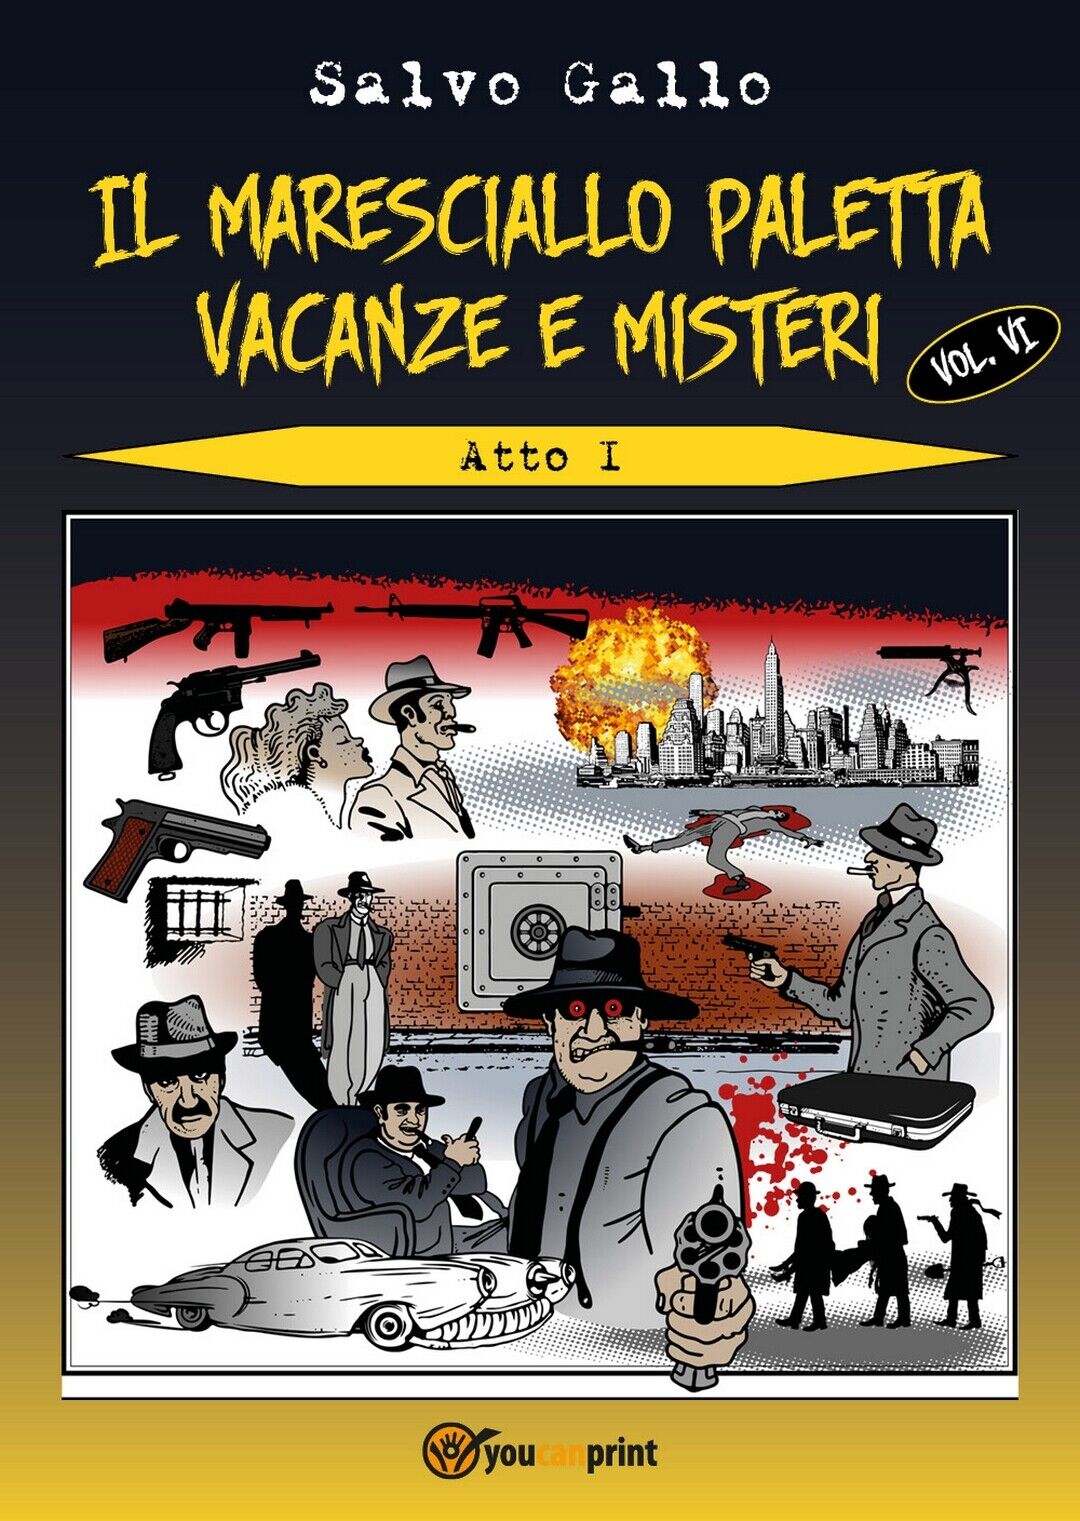 Il maresciallo Paletta Vol.6 Vacanze e misteri- Atto 1  di Salvo Gallo,  2019 